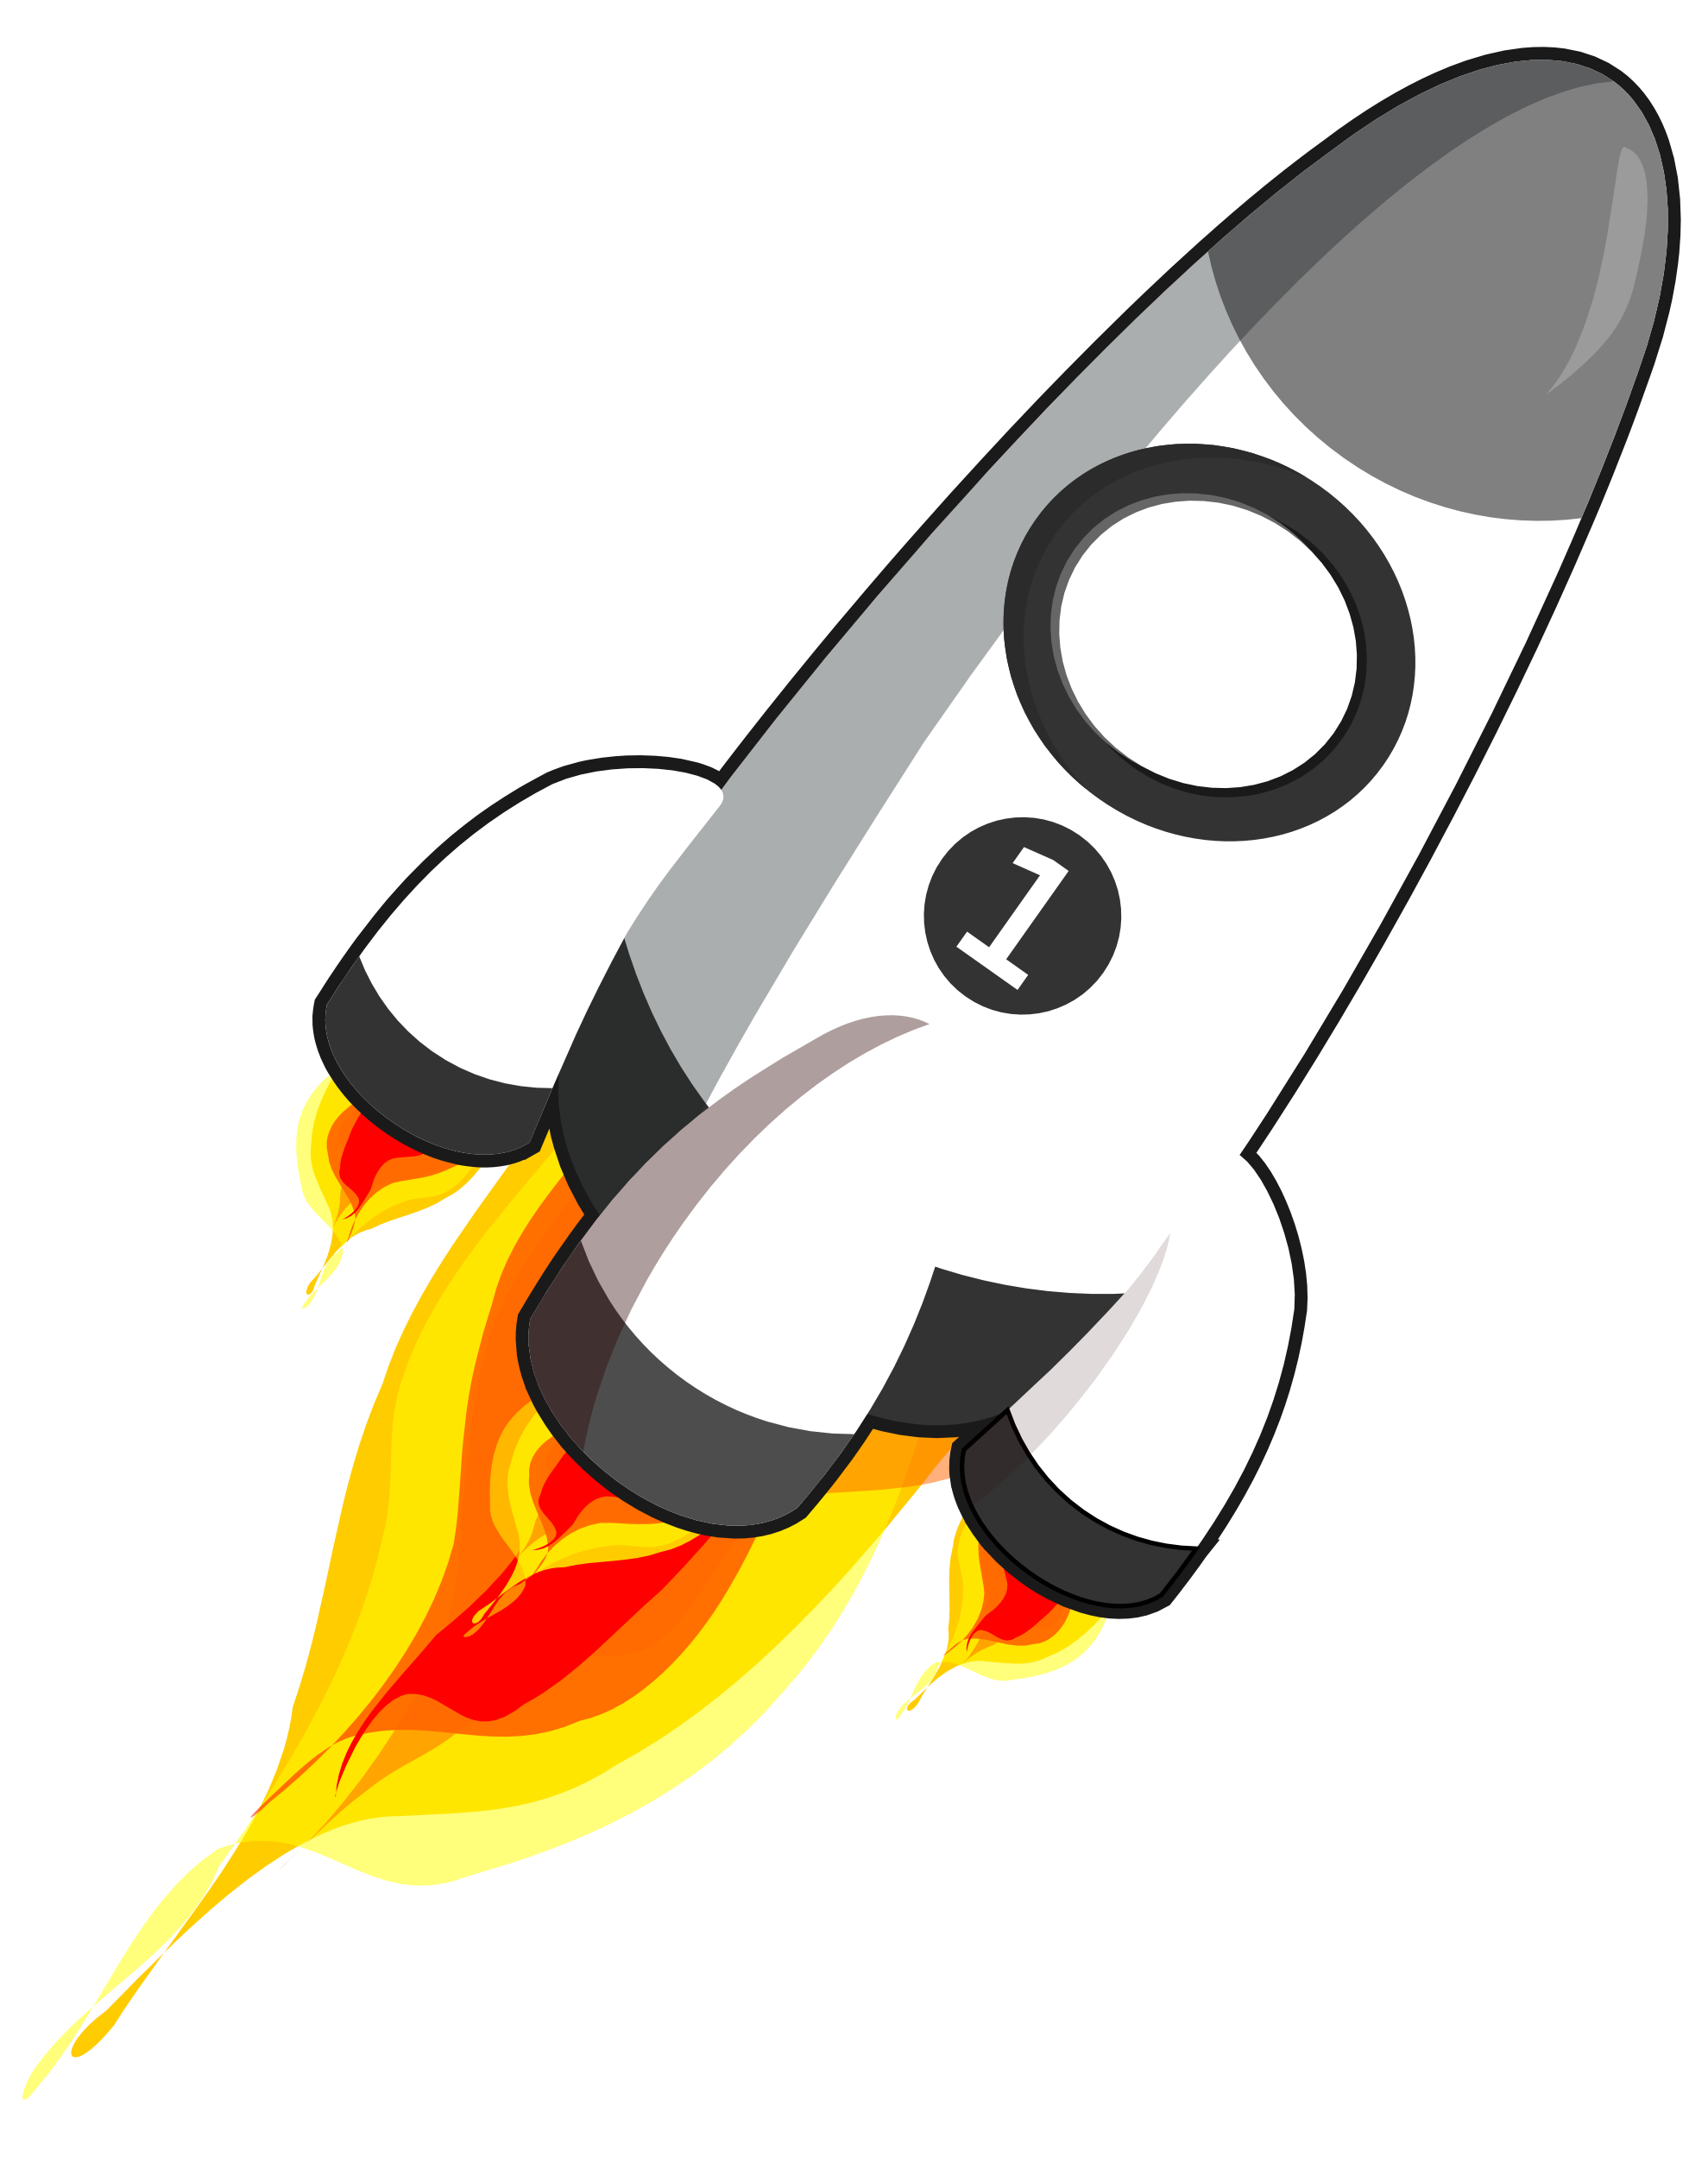 Free Cartoon Rocket, Download Free Cartoon Rocket png images, Free